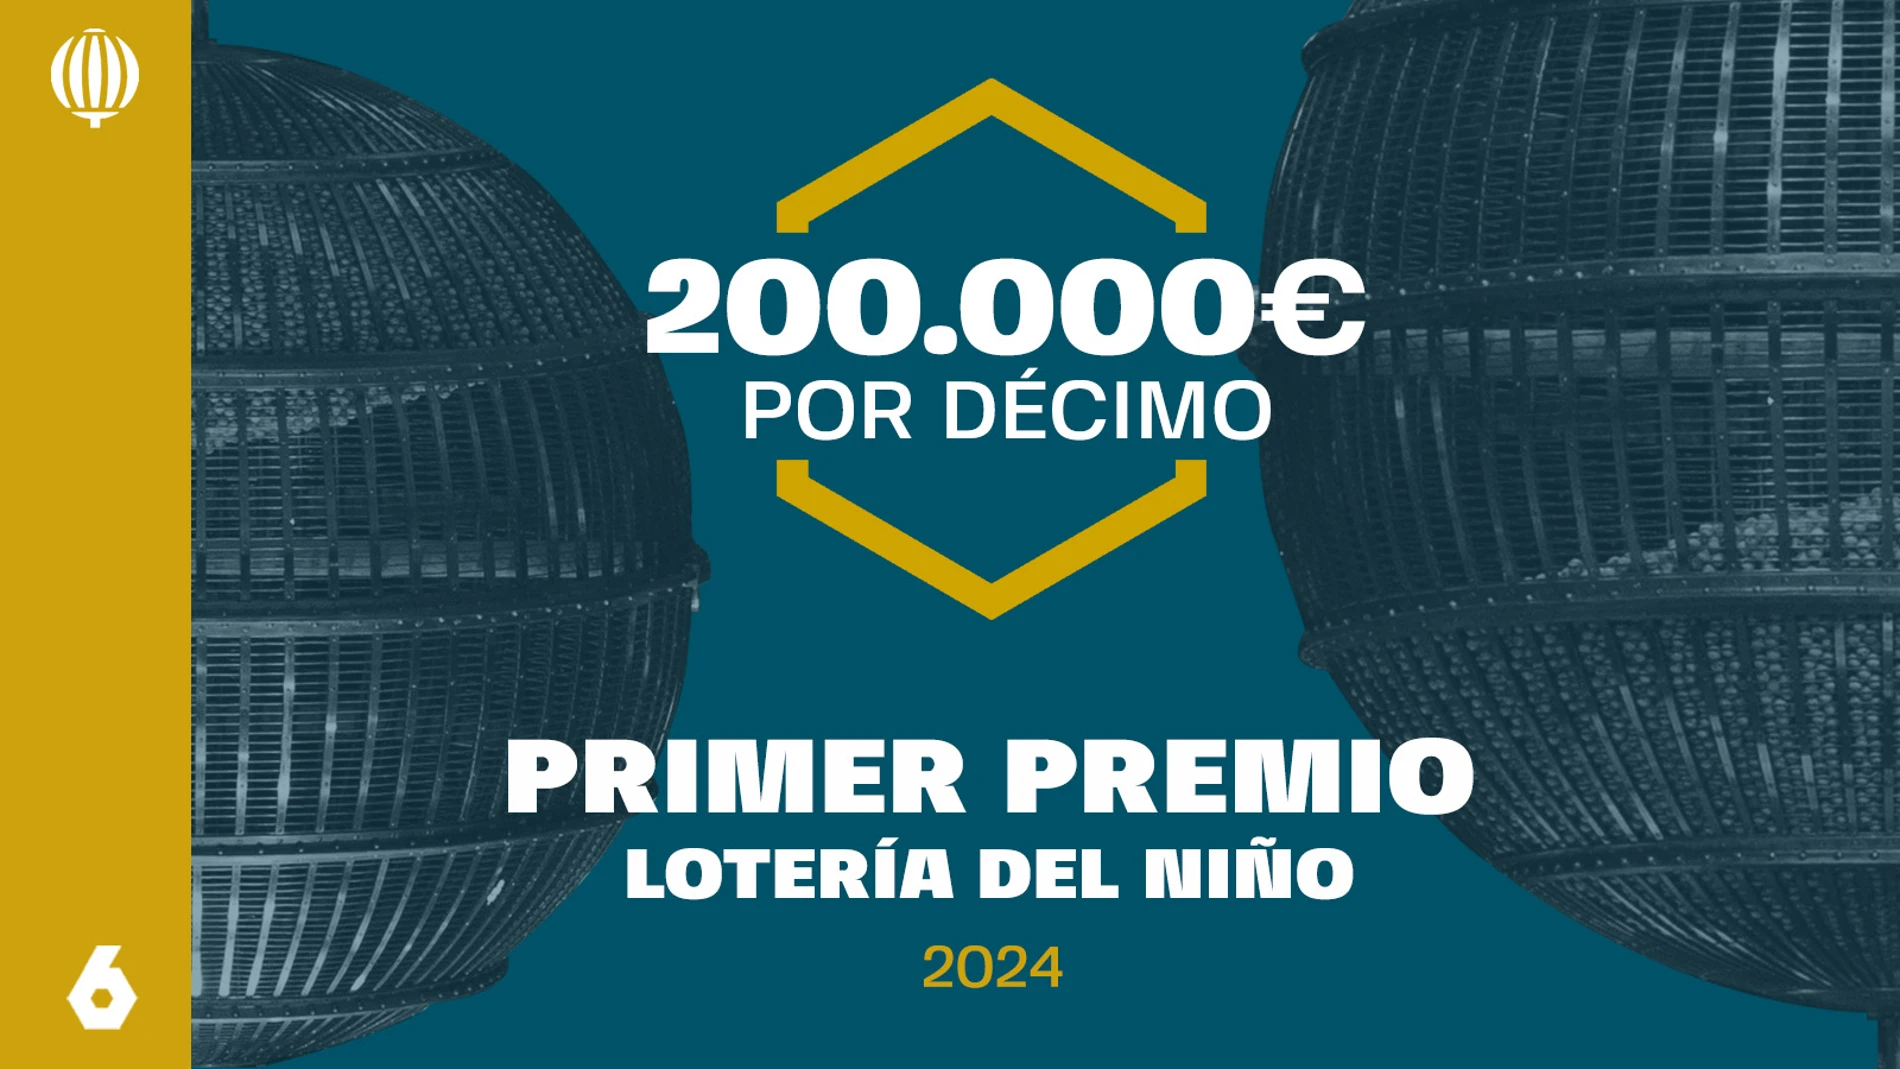 El primer premio de la Lotería del Niño reparte 200.000 euros íntegros por cada décimo premiado